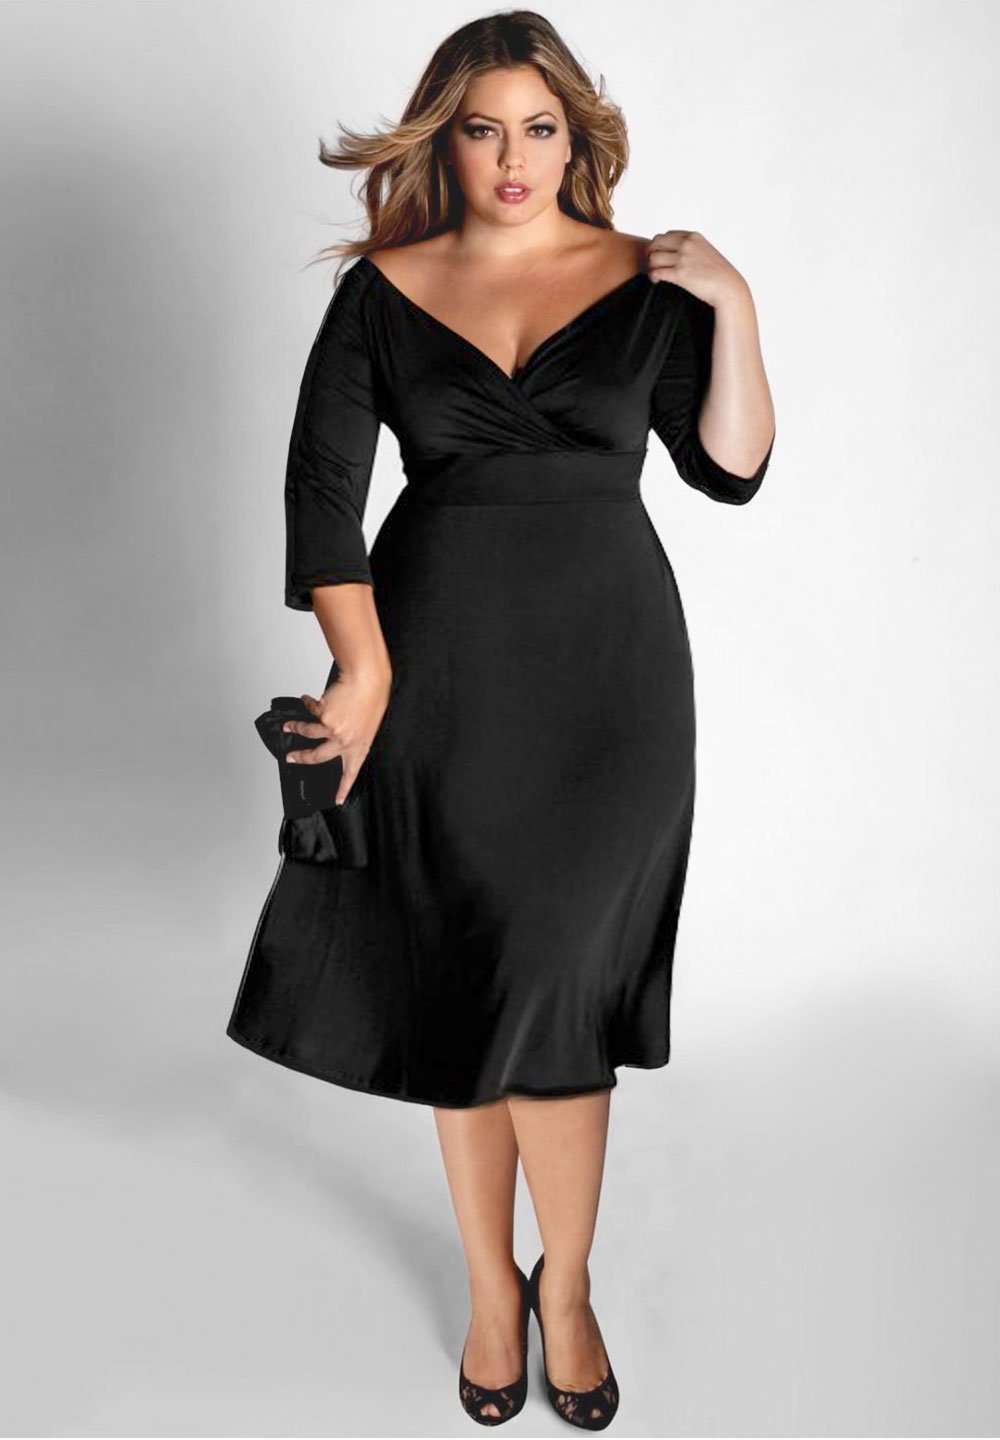 plus size black cocktail dress